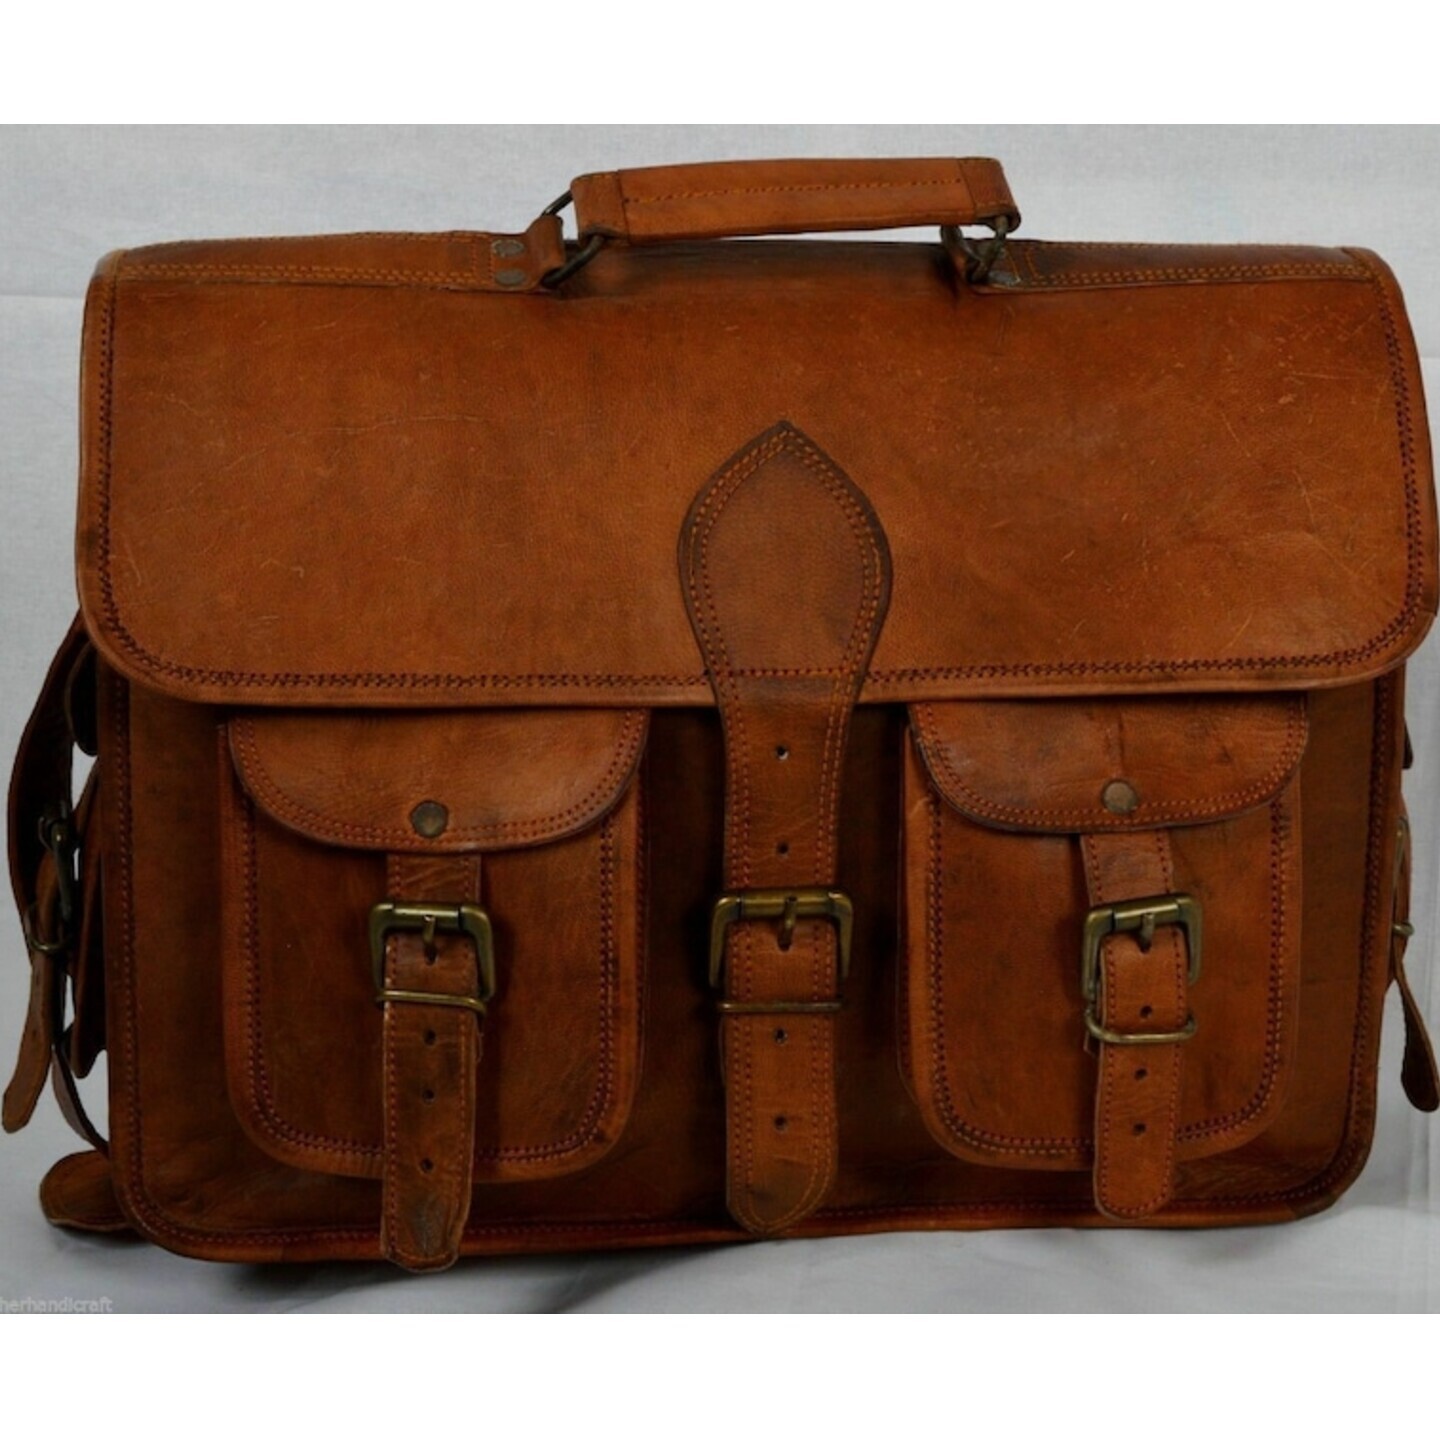 Handmade Goat Leather Bag Genuine Vintage Messenger Bag Laptop Briefcase Shoulder Handbag Real Brown Satchel Men Women Messenger Bag